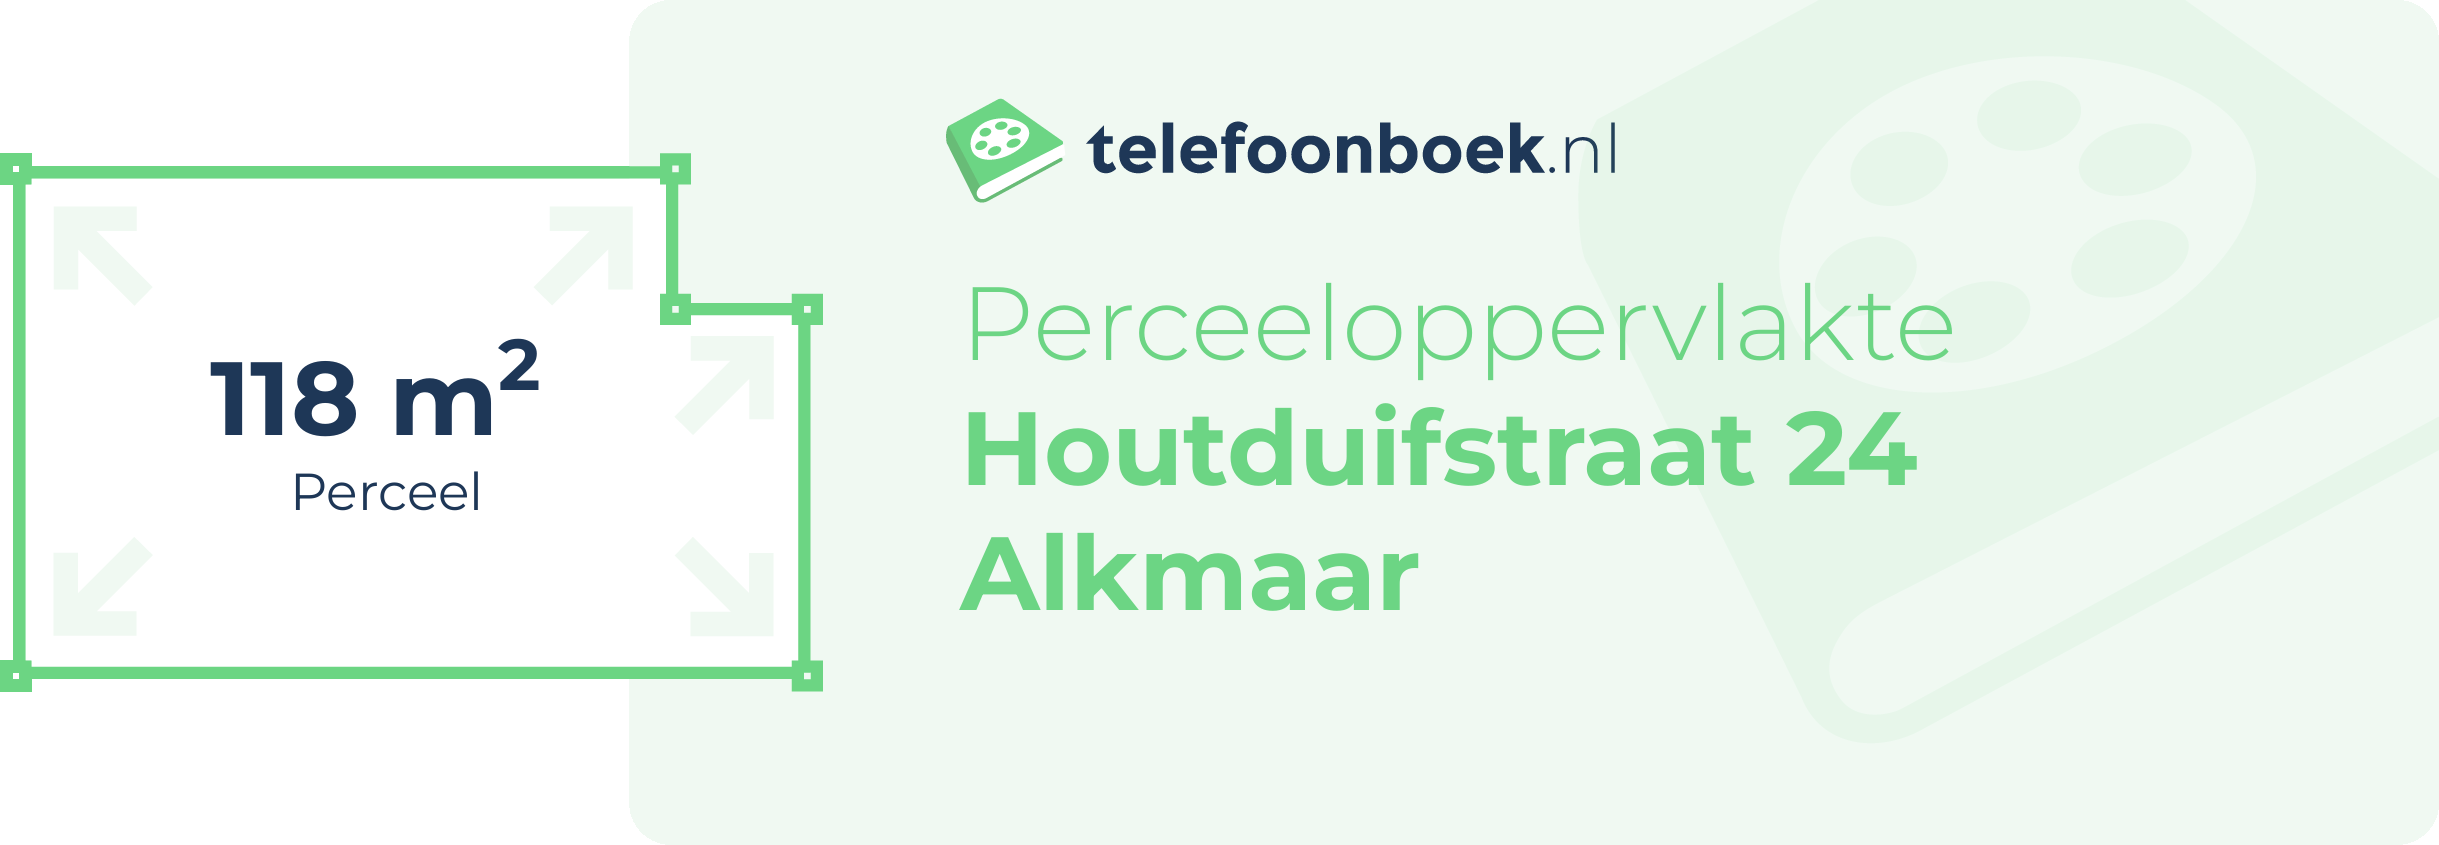 Perceeloppervlakte Houtduifstraat 24 Alkmaar